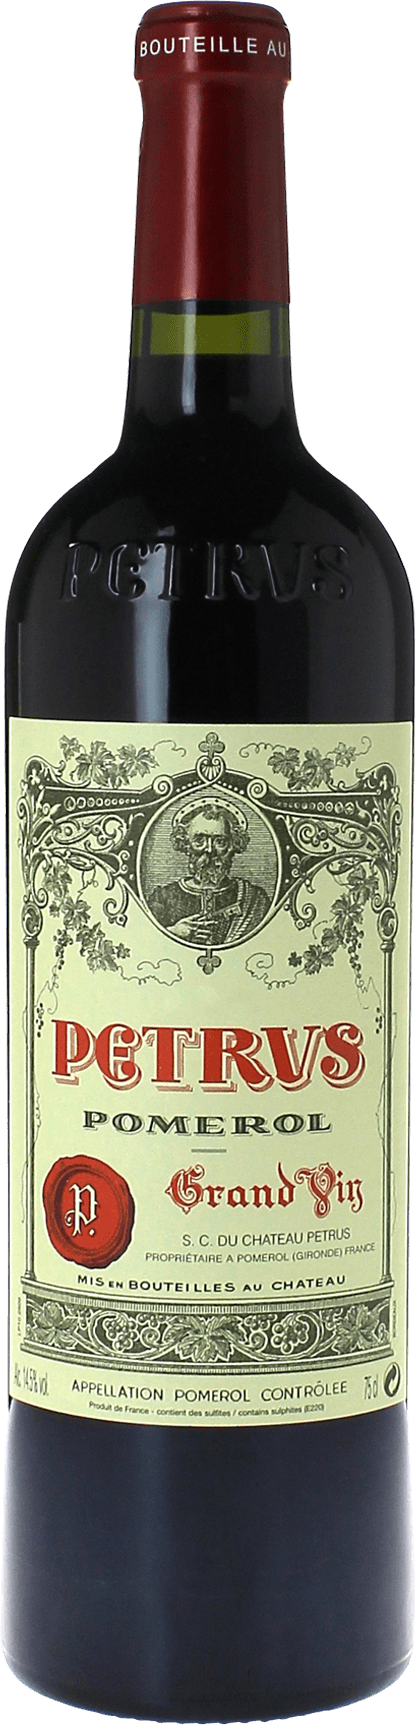 Petrus 2011  Pomerol, Bordeaux rouge